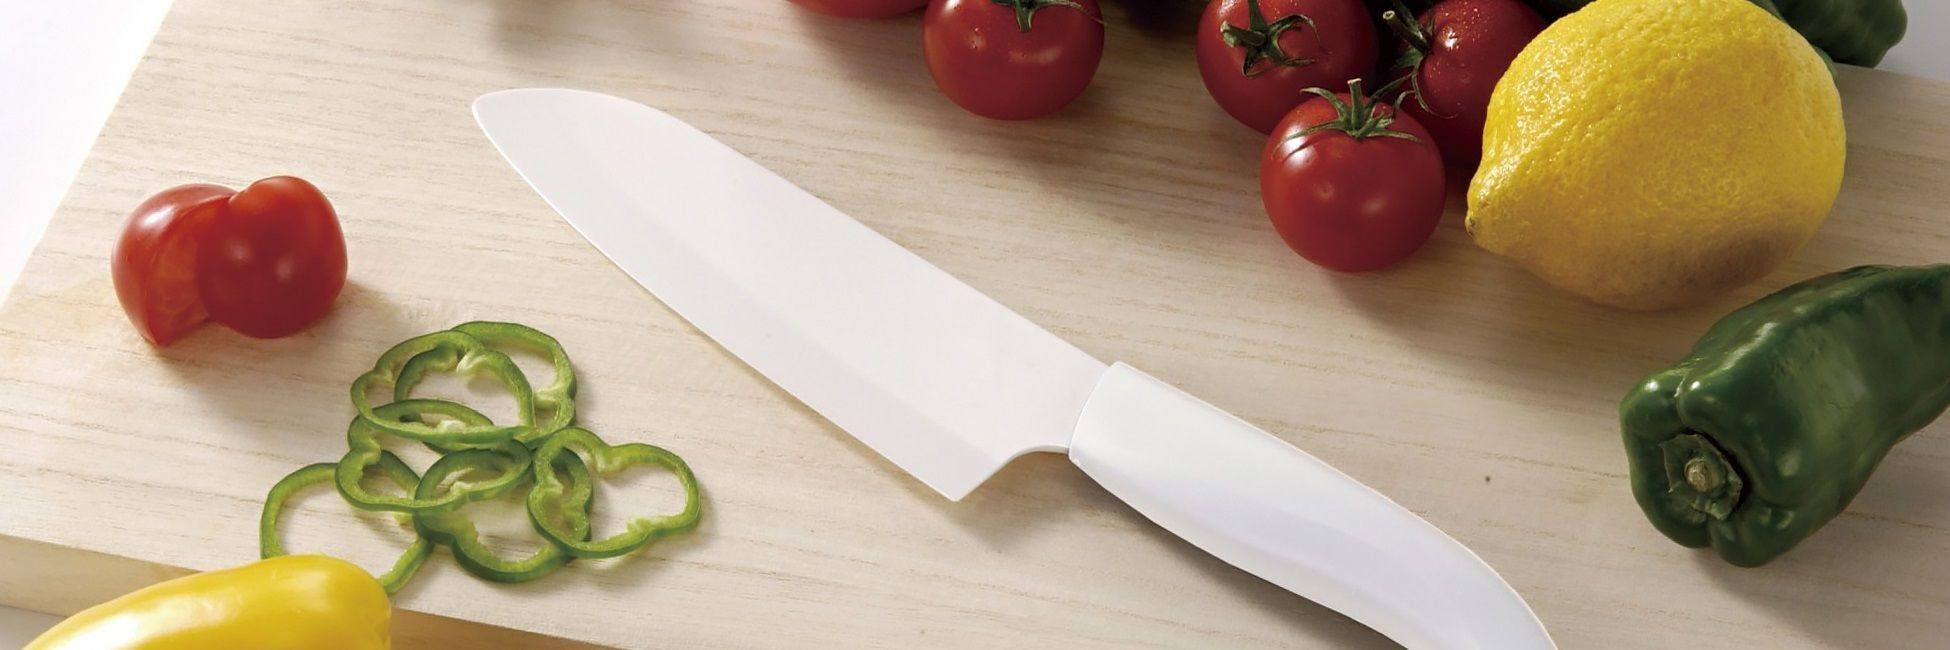 Як обрати правильний ніж для вашої кухні?